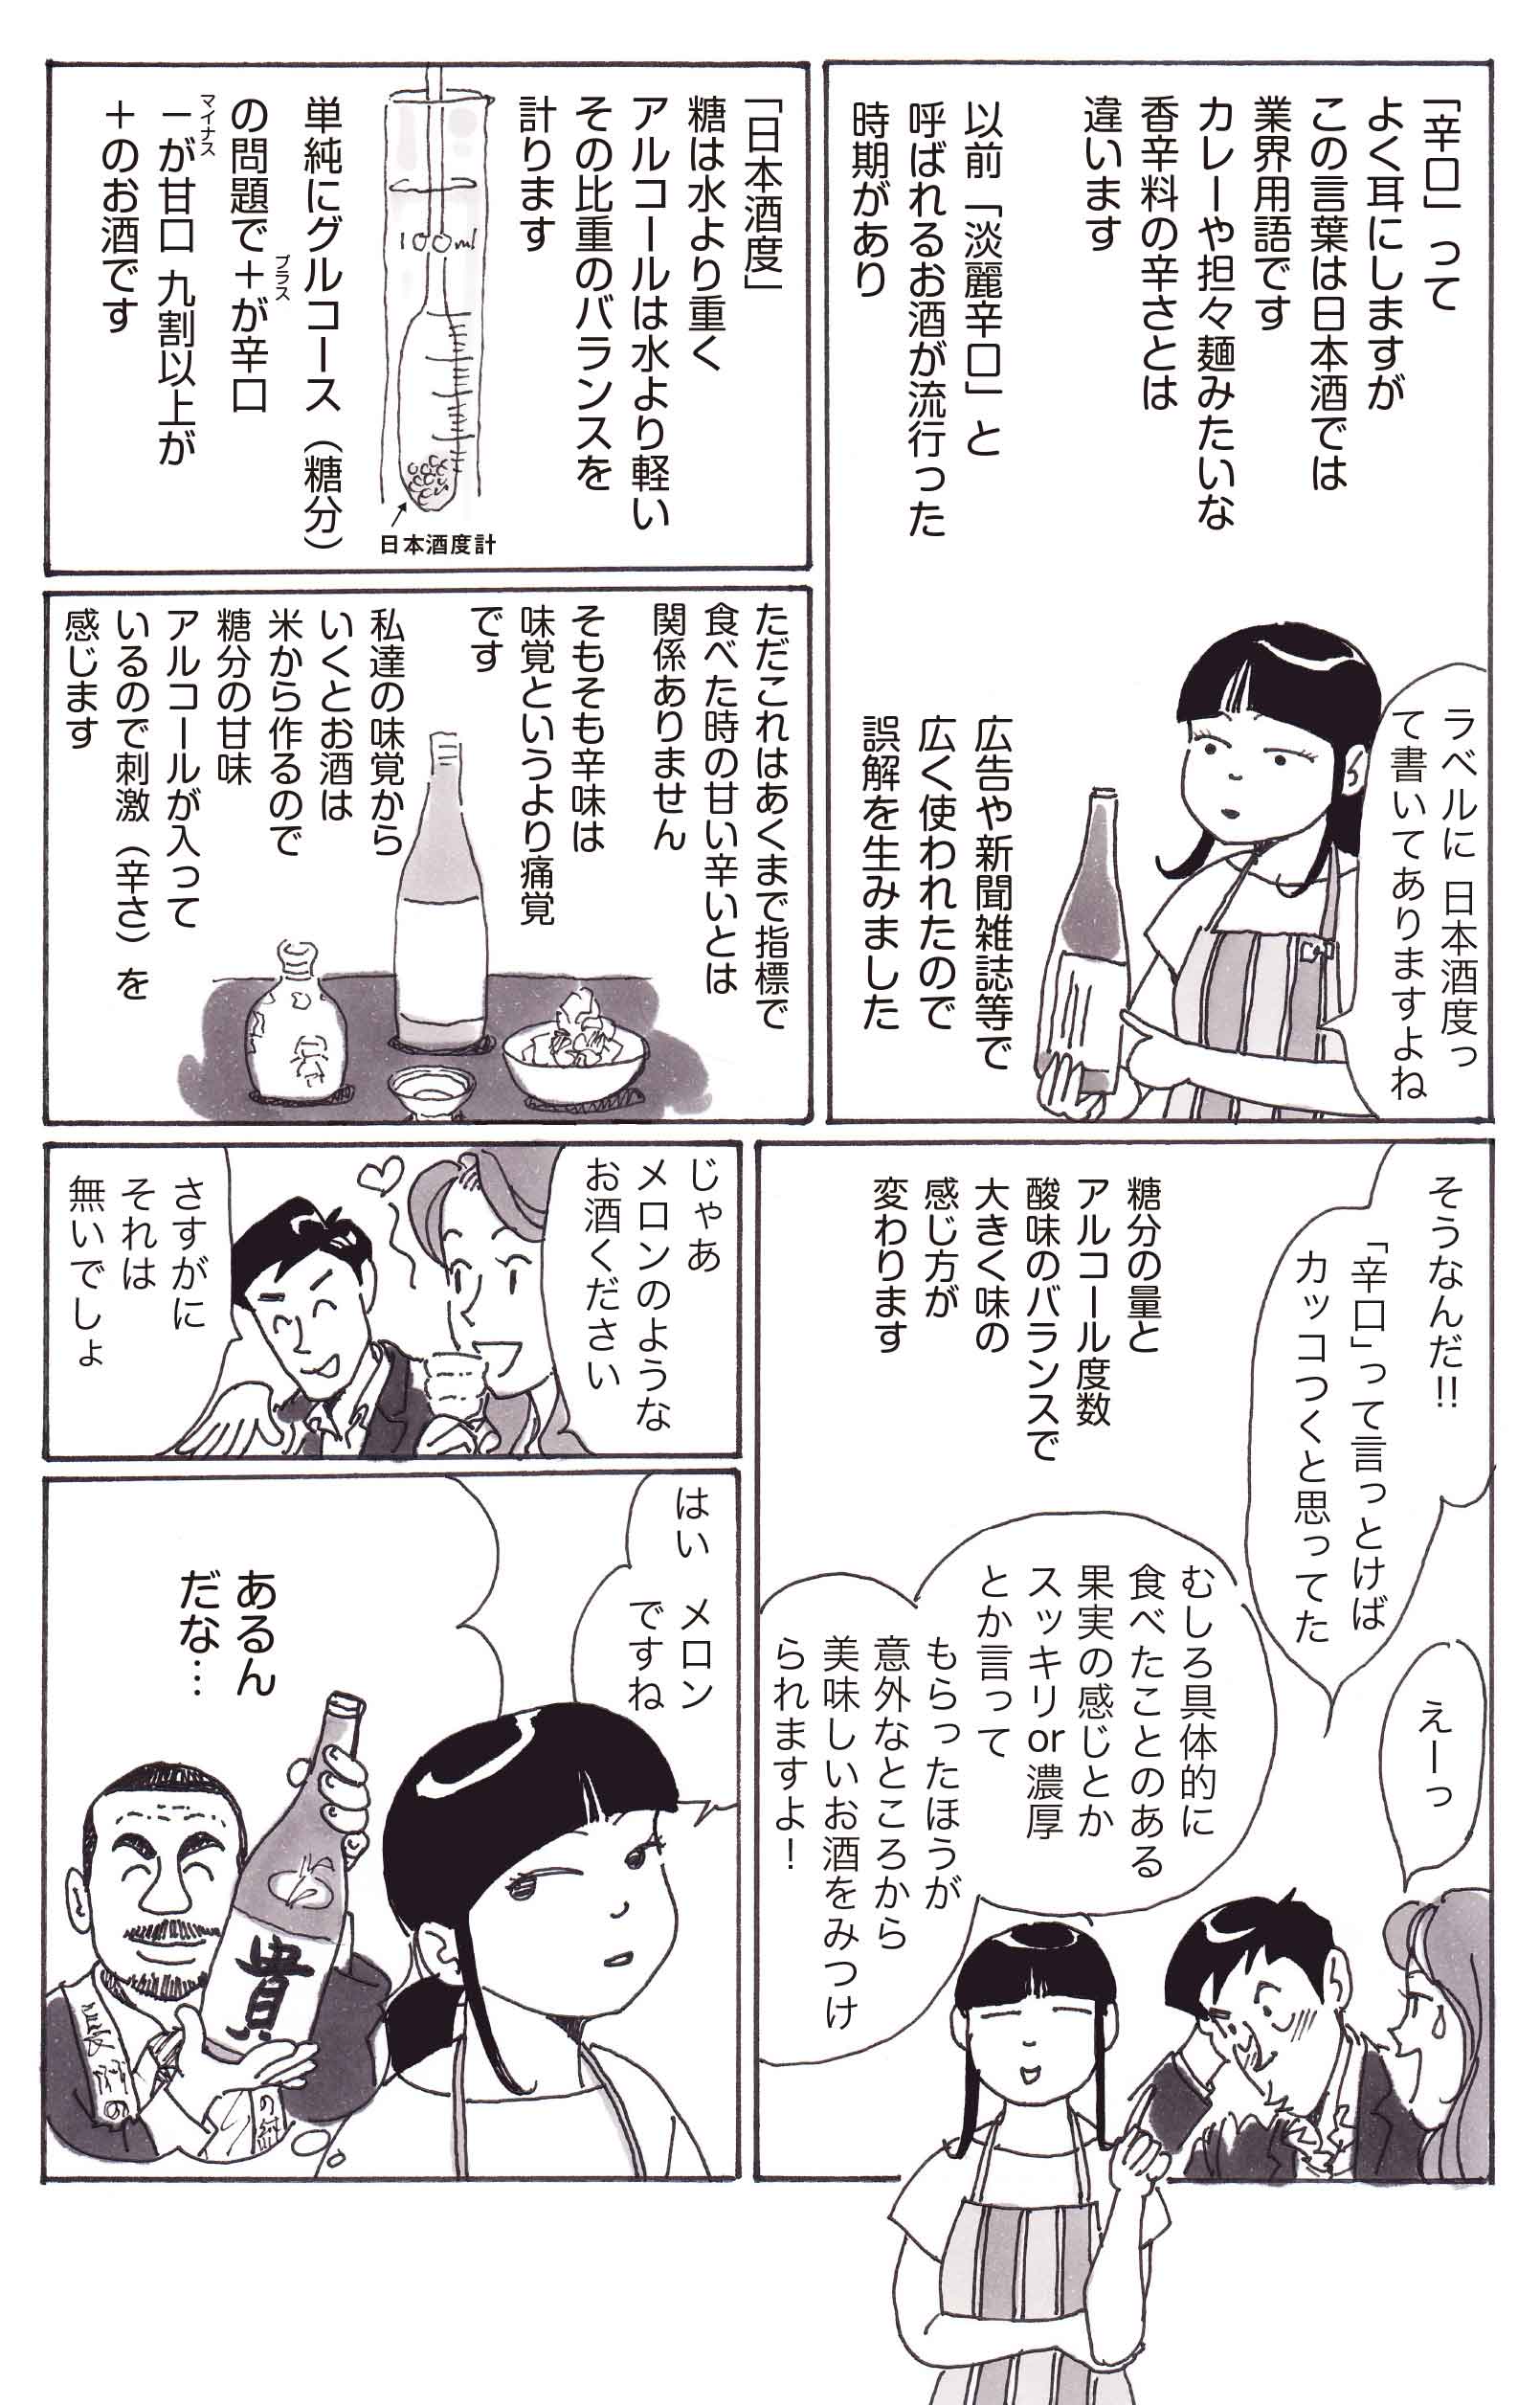 日本酒に恋して 若かりし私と新宿 無料で読める漫画 ４コマサイト パチクリ